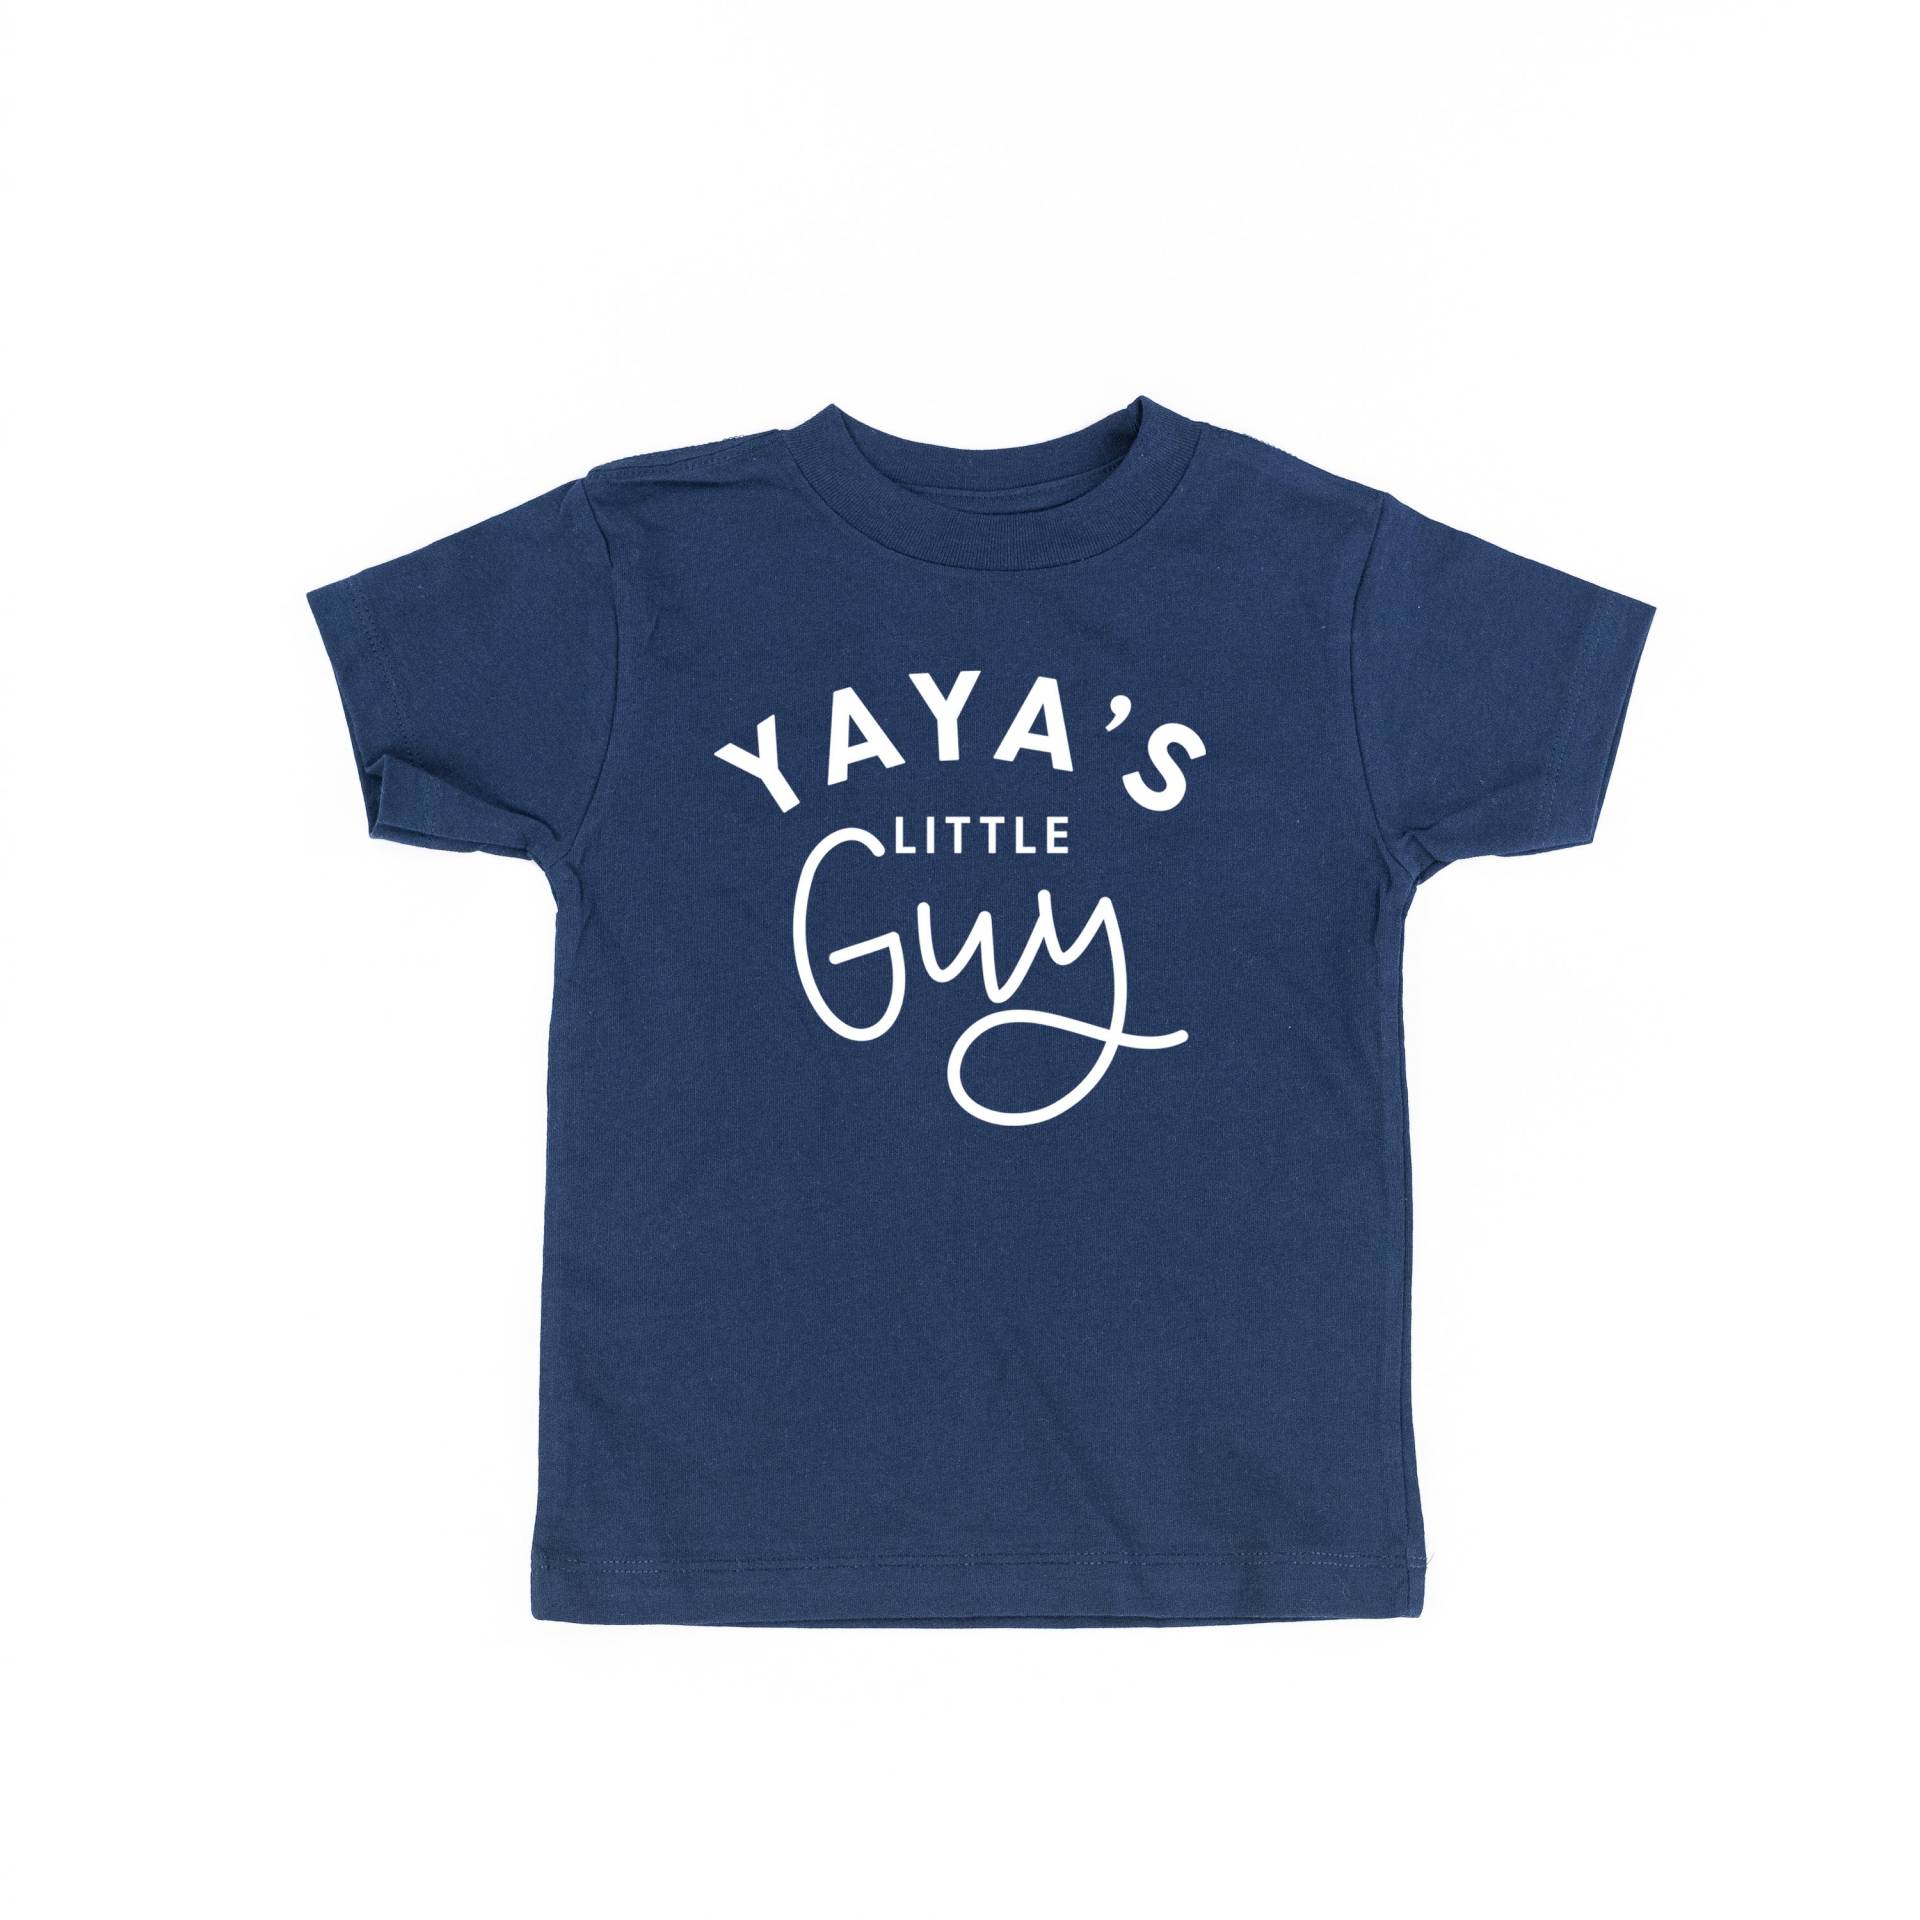 Yaya Es Little Guy - Kindershirt | Kleinkind Junge Shirt Shirts Für Kleine Jungs Omas Kerl Baby von LittleMamaShirtShop